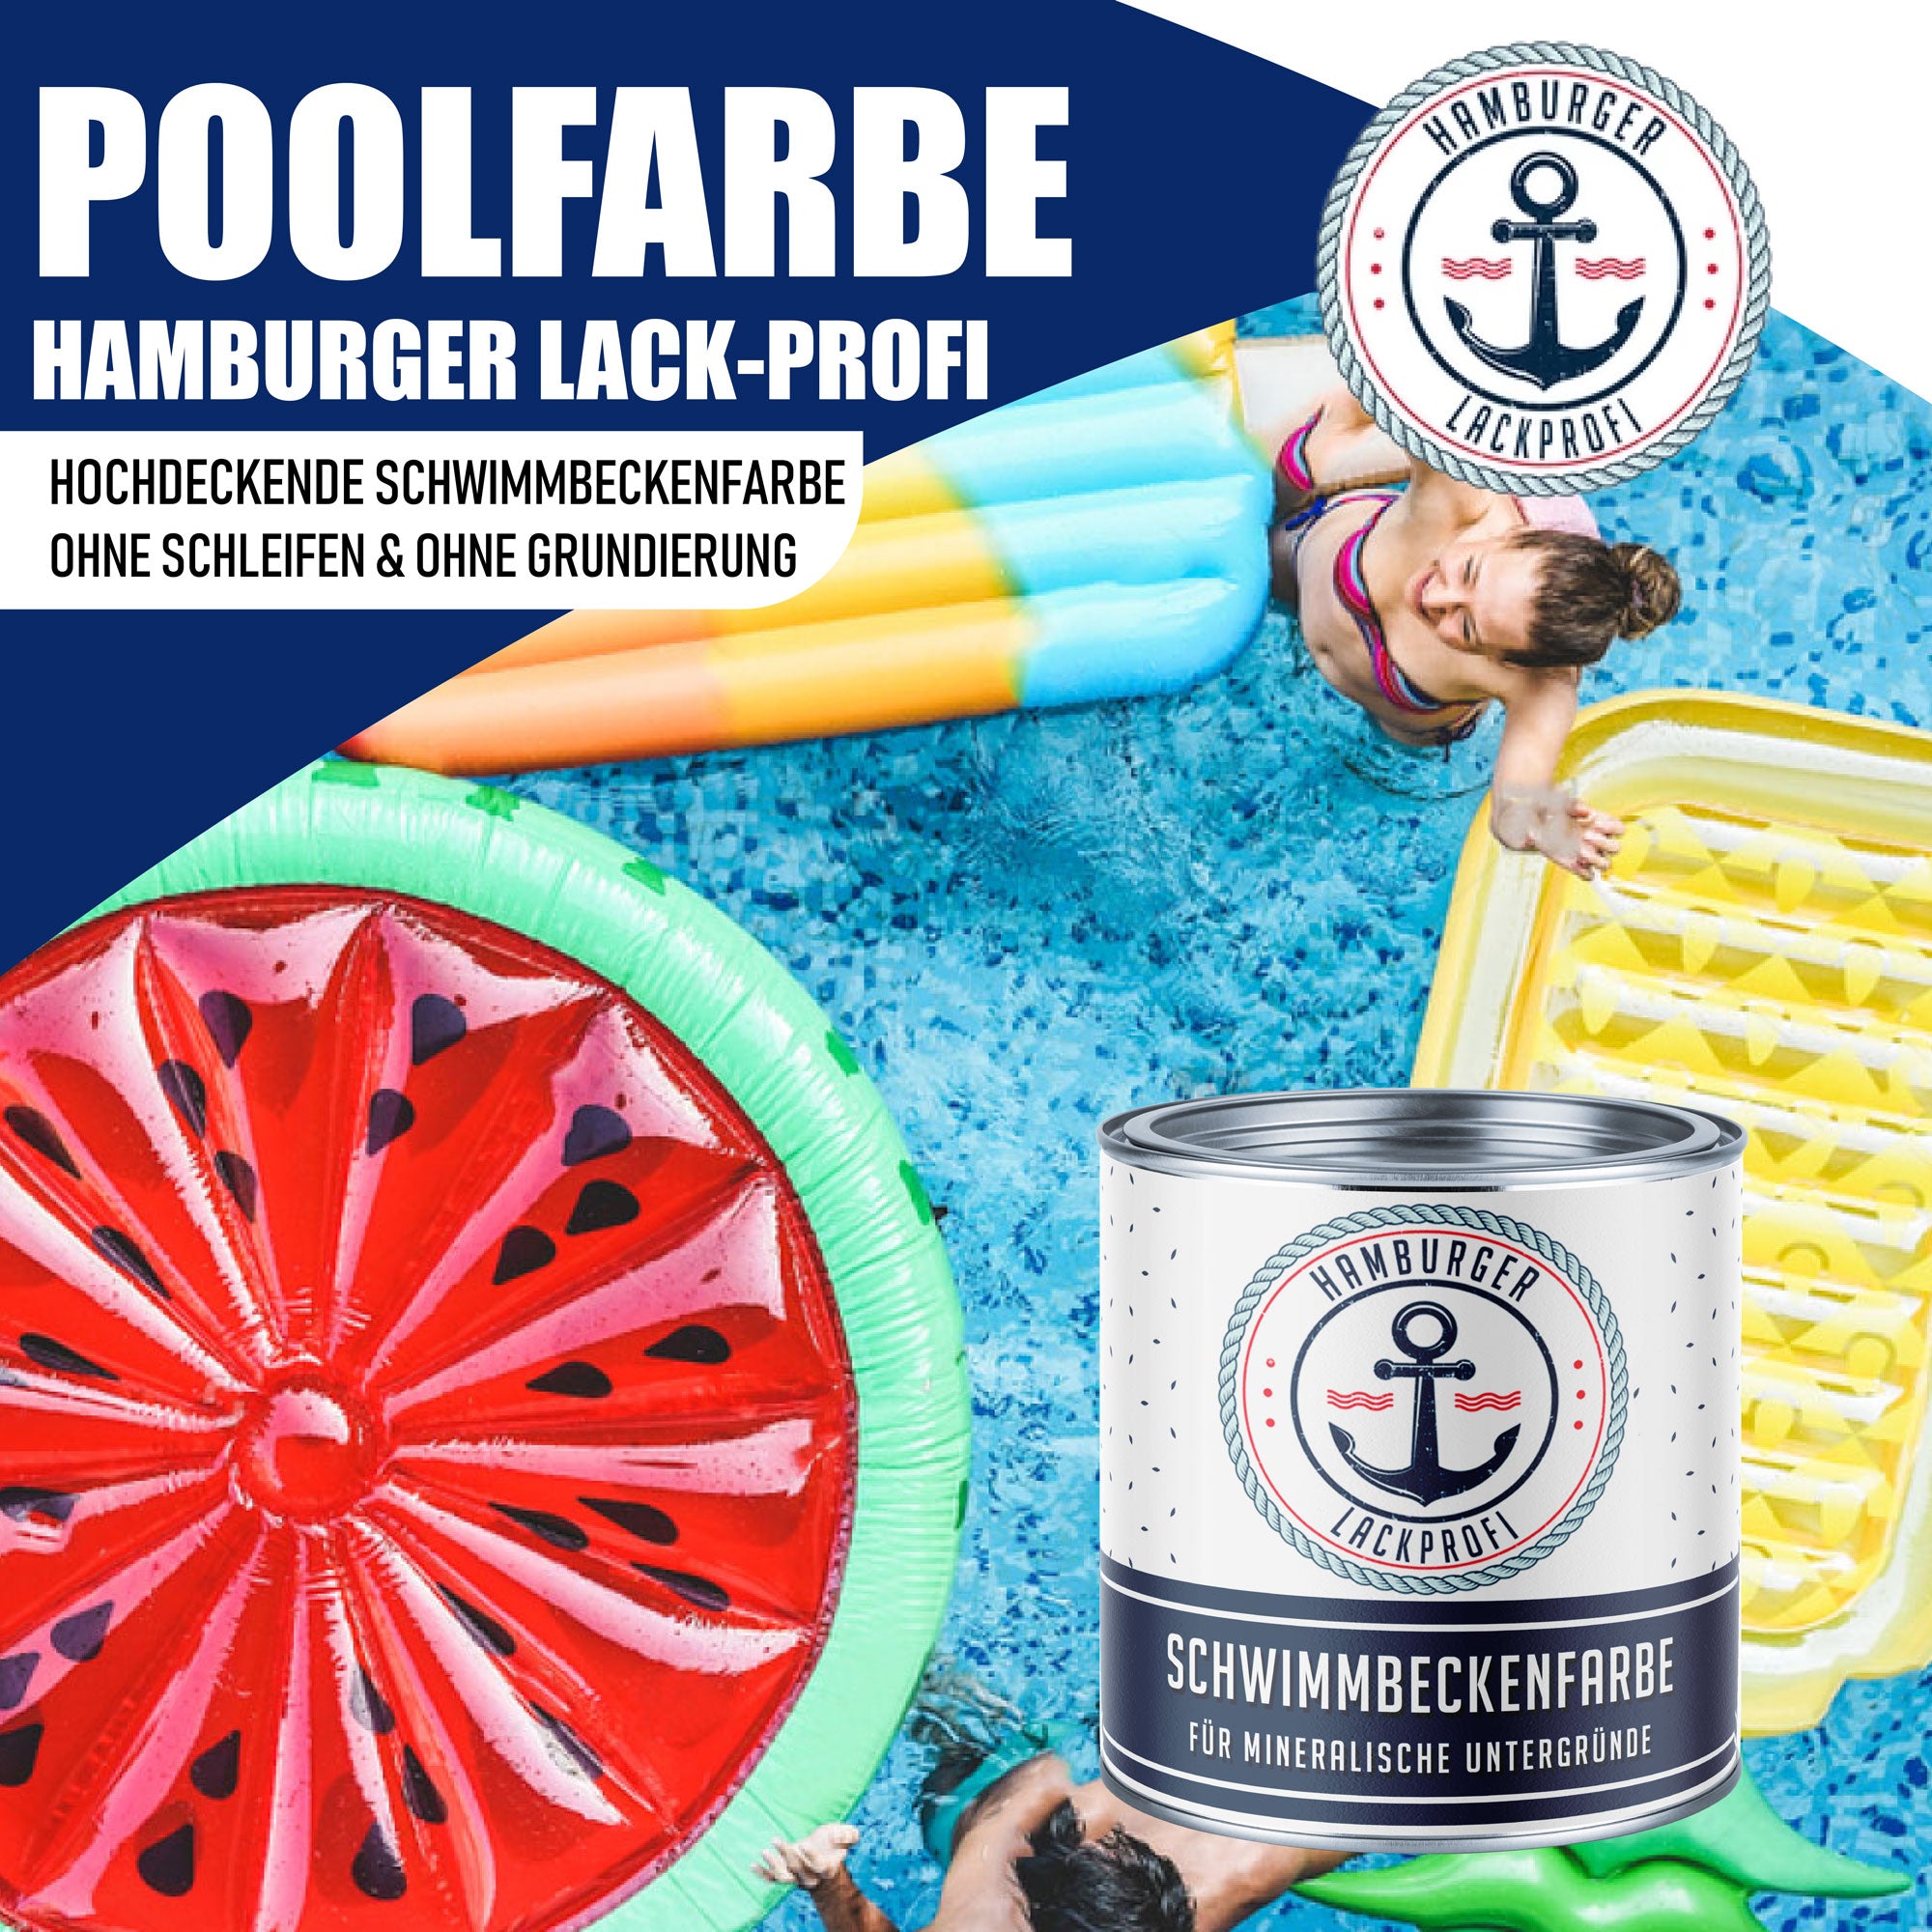 Hamburger Lack-Profi Schwimmbeckenfarbe Pastellgelb RAL 1034 - hochdeckende Poolfarbe